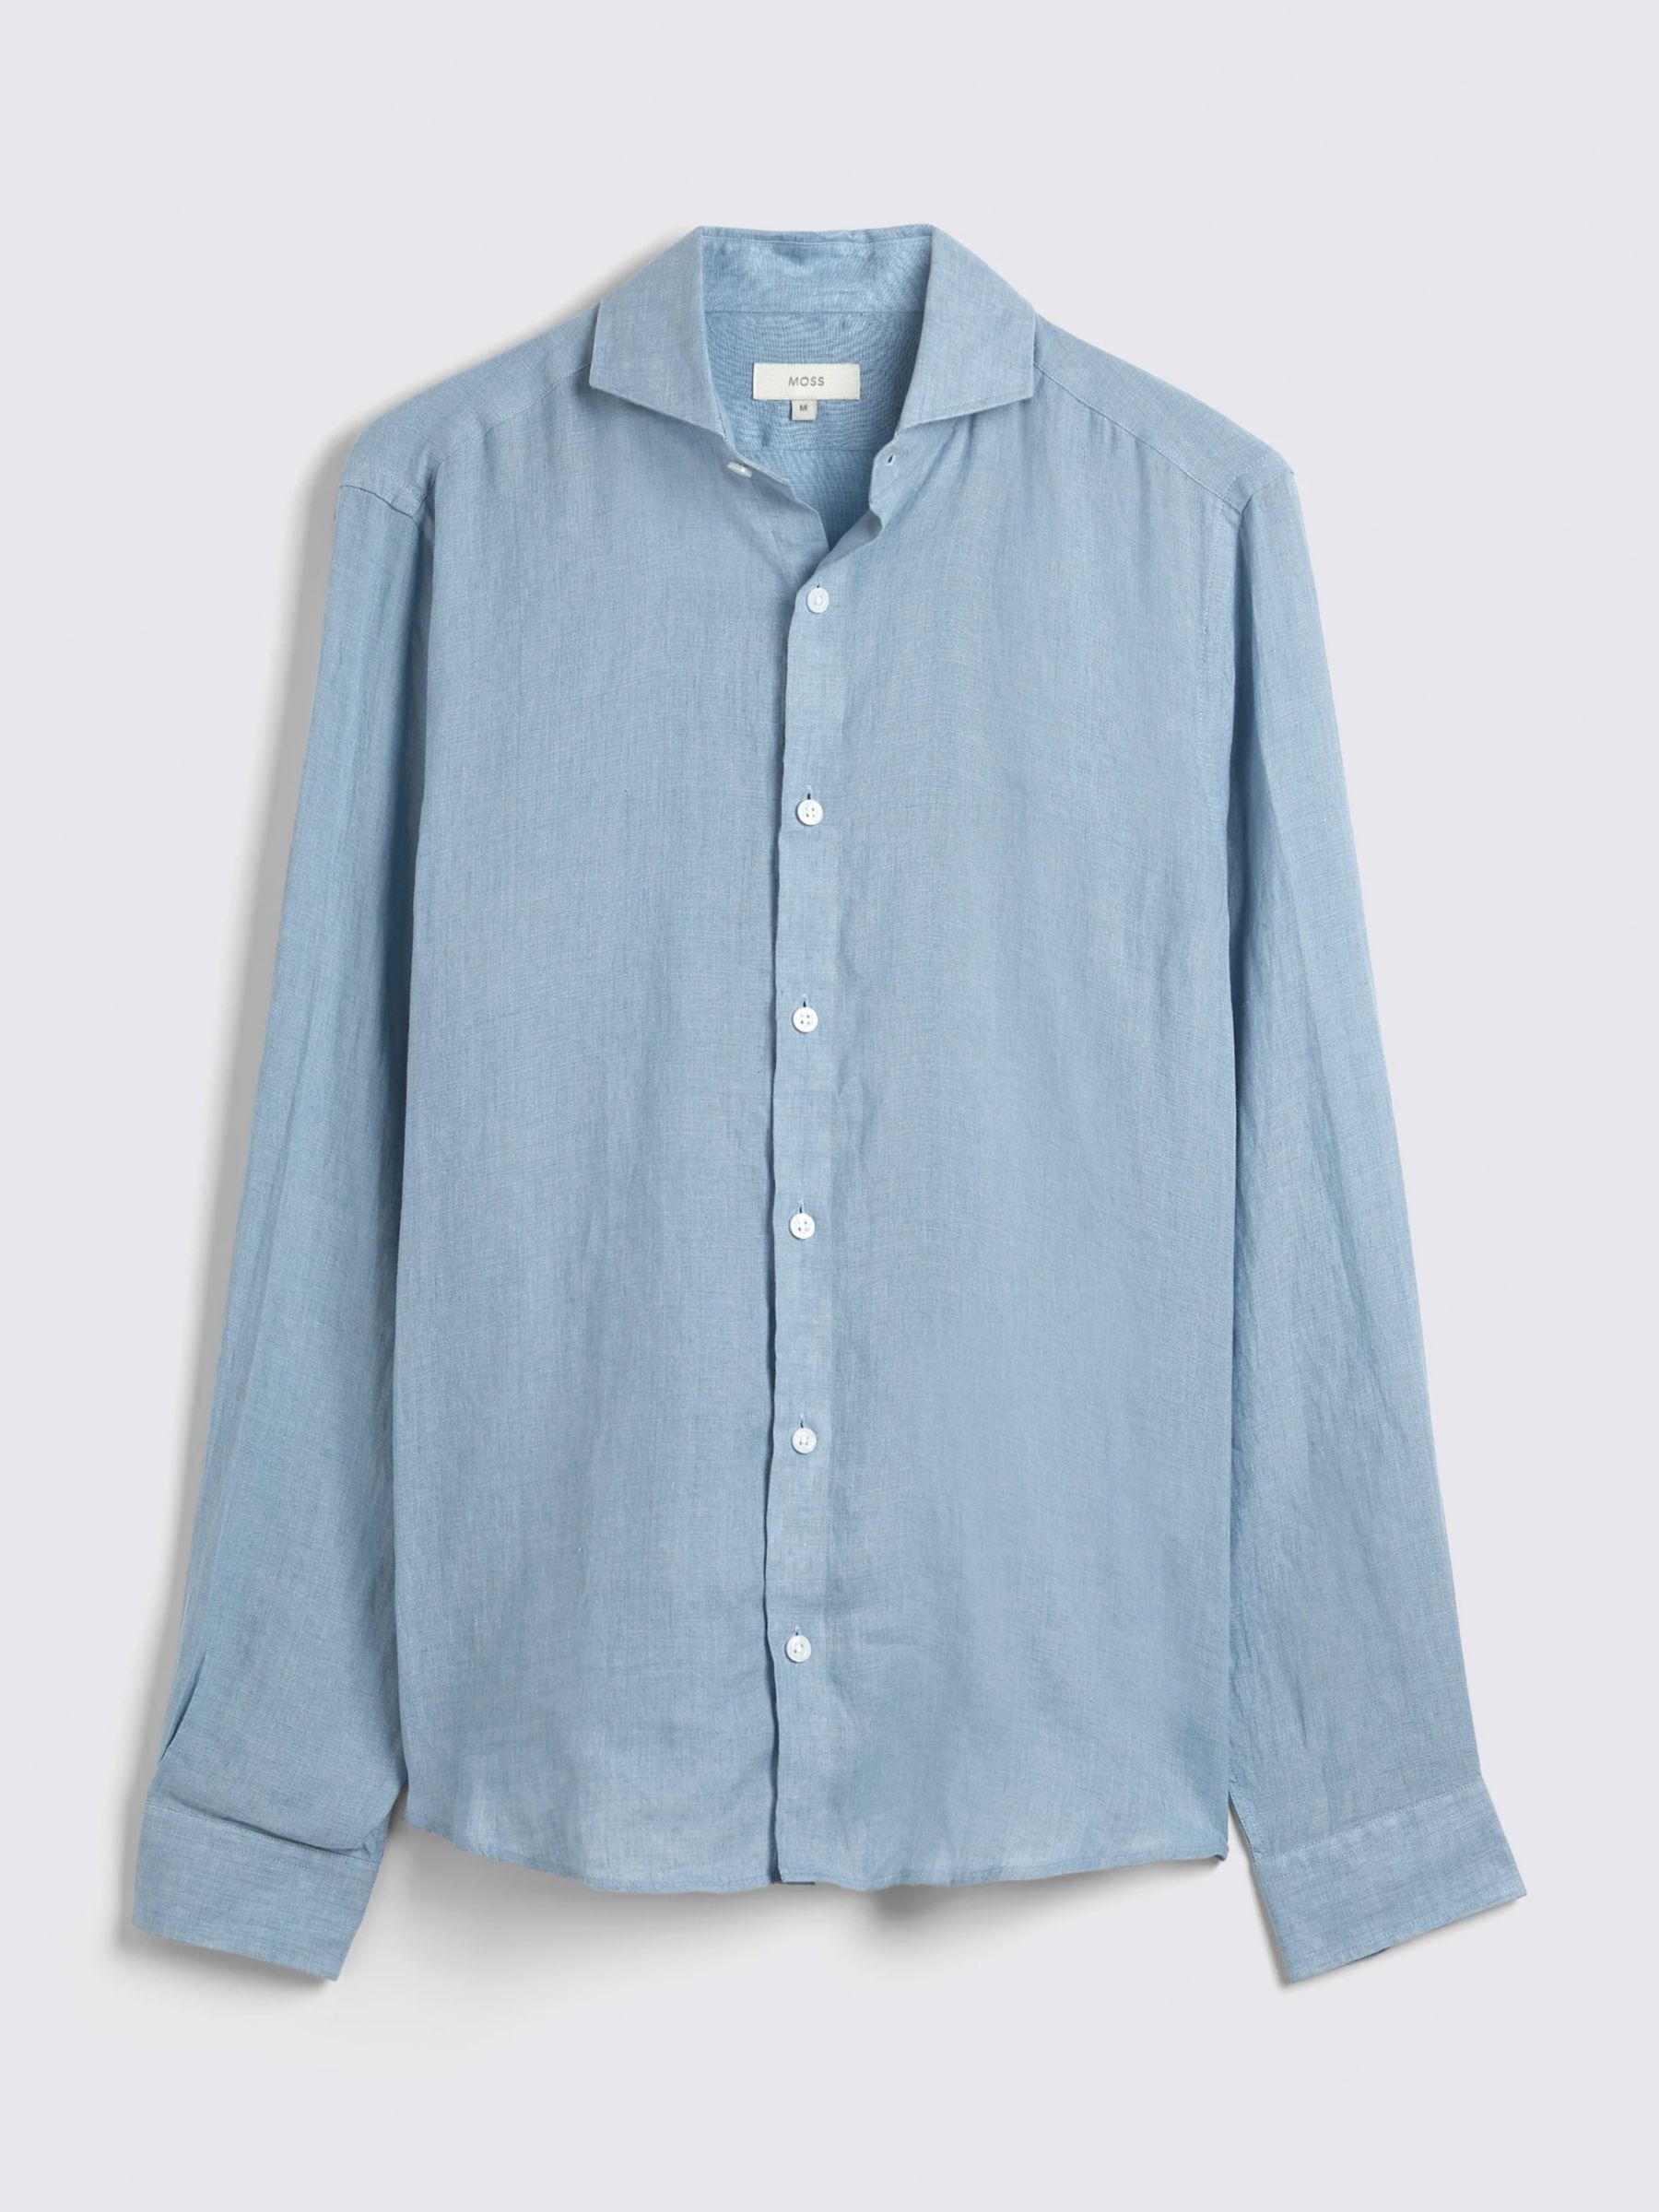 Moss Tailored Fit Linen Long Sleeve Shirt, Soft Blue, S